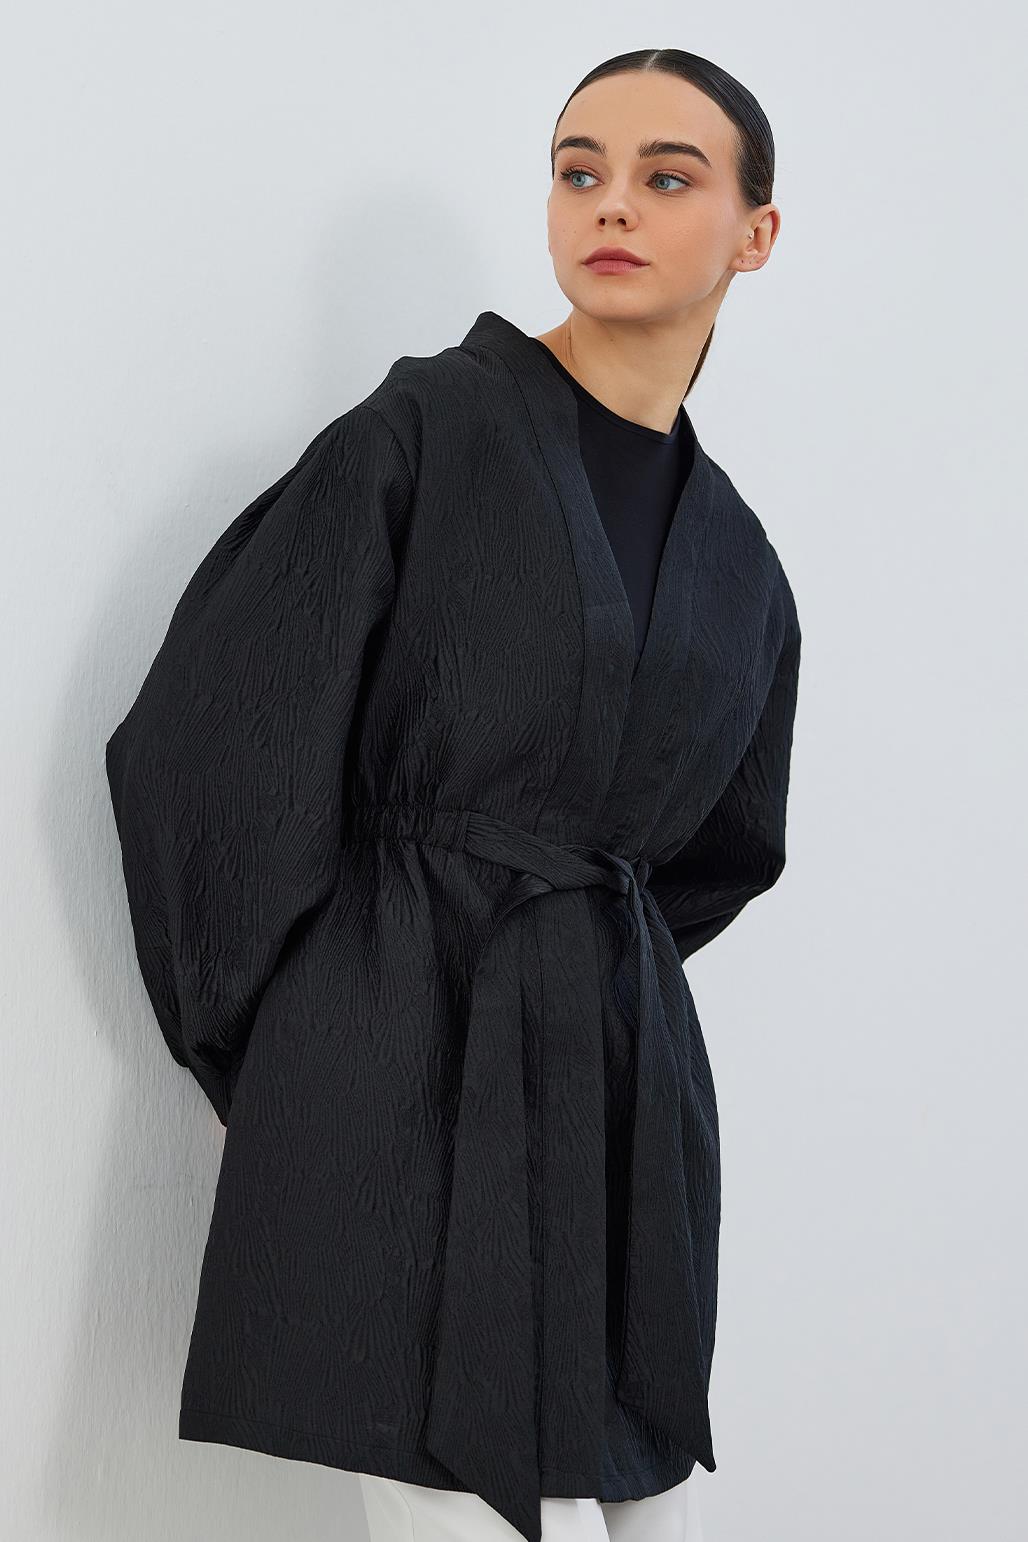 Rema Taffeta Kimono Black